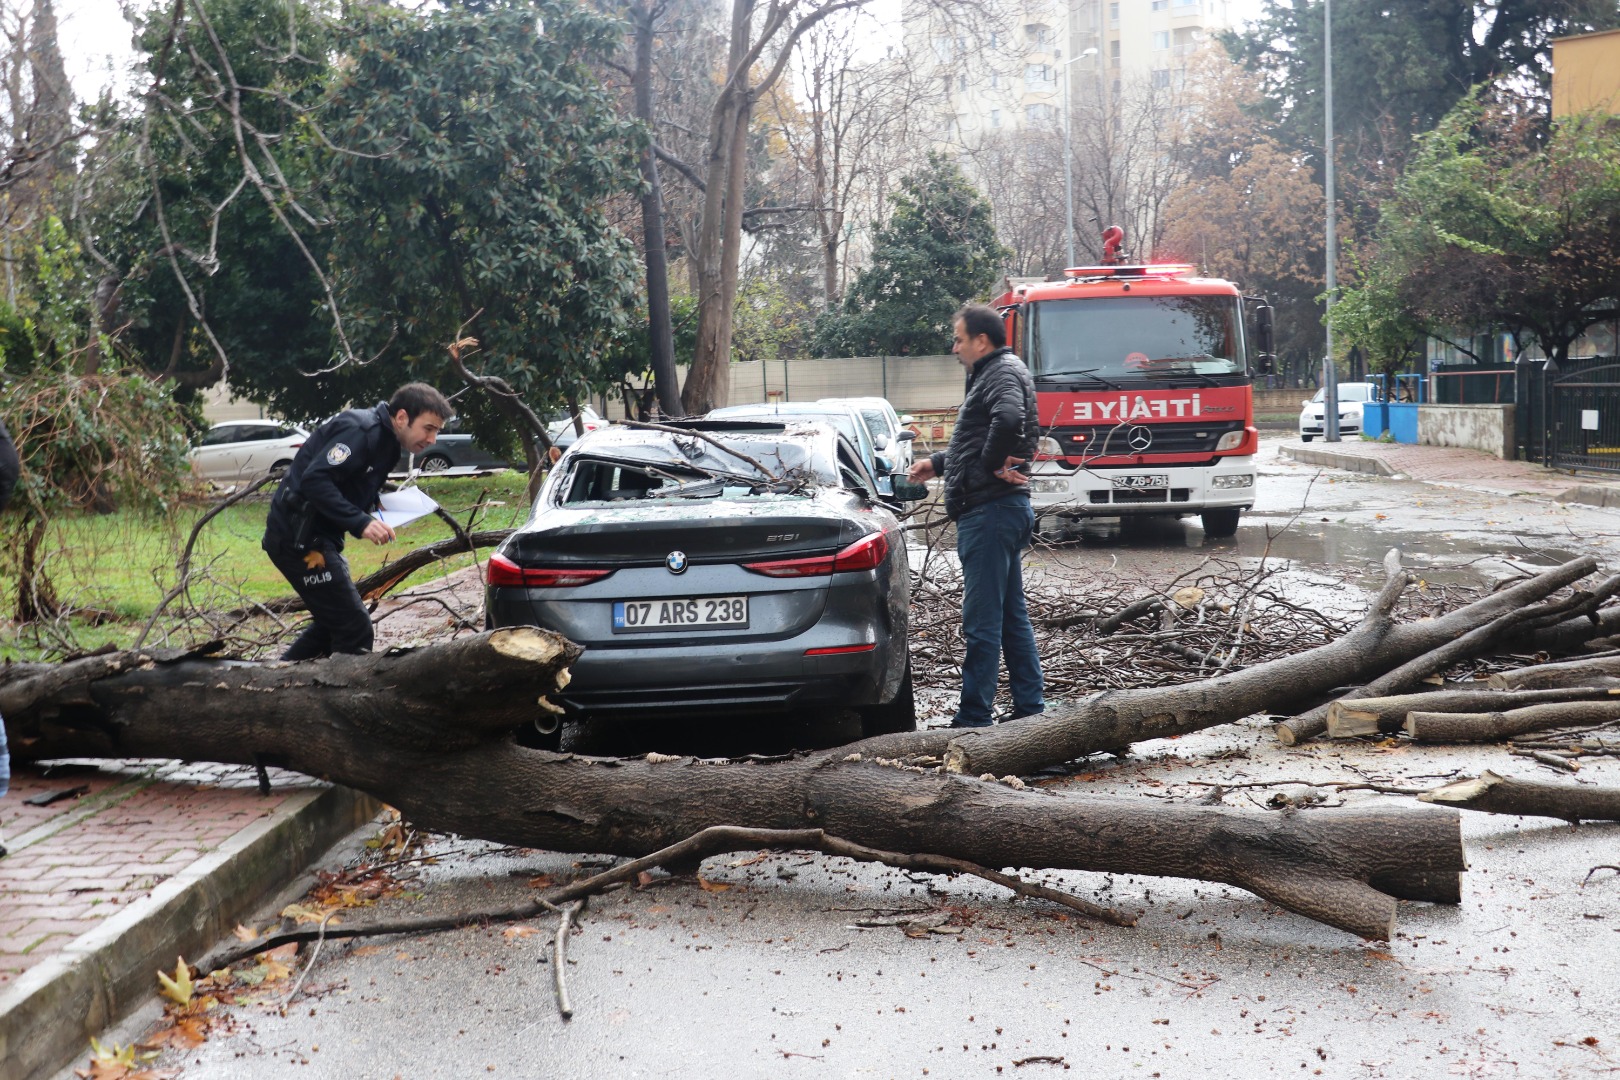 Antalya'da fırtına ve sağanak yağış hayatı durma noktasına getirdi. Yollar göle döndü ağaçlar devrildi 11